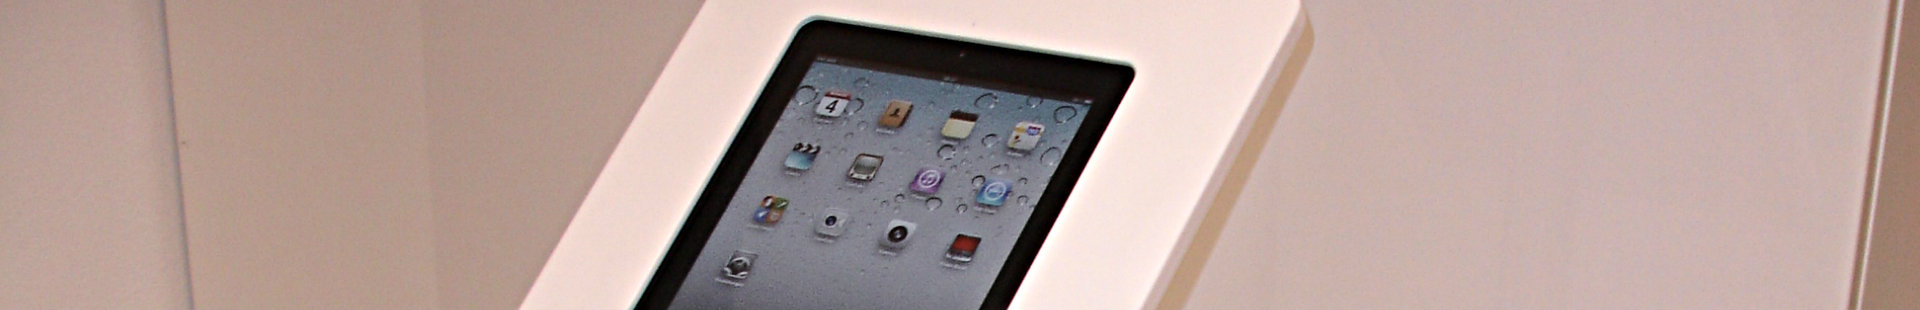 iPad Verleih in Wien und Österreich, Tablet mieten, iPad Stative und iPad Steher